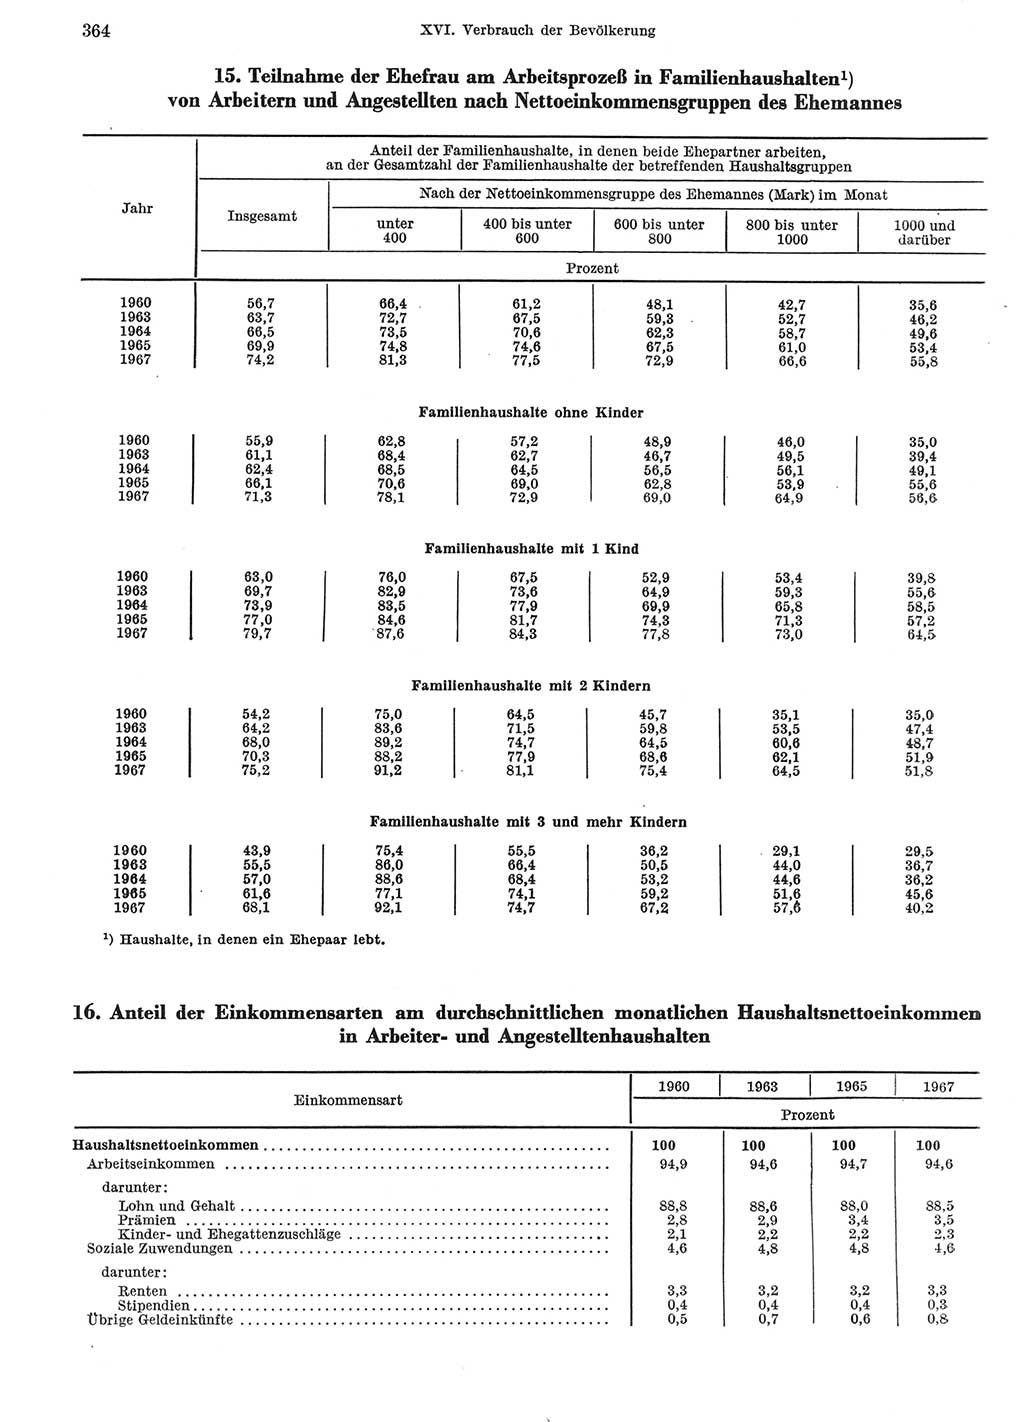 Statistisches Jahrbuch der Deutschen Demokratischen Republik (DDR) 1969, Seite 364 (Stat. Jb. DDR 1969, S. 364)